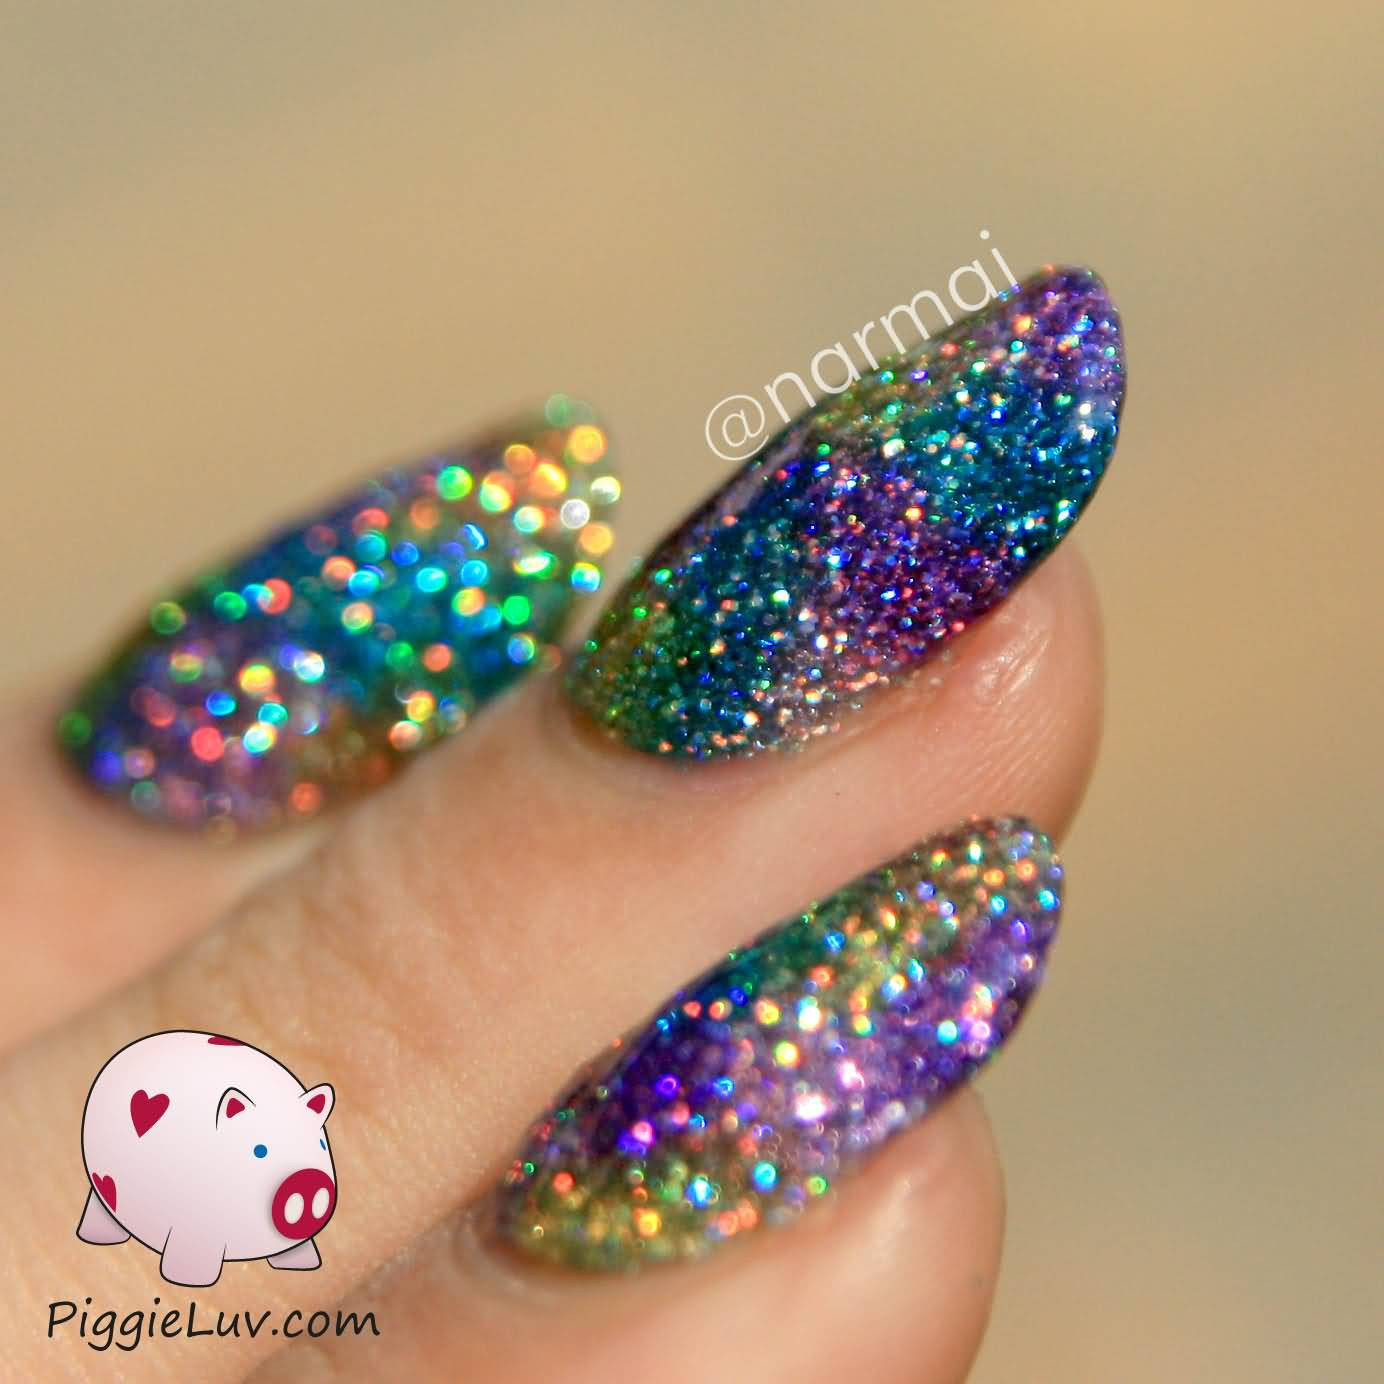 Sparkly Glitter Nails
 60 Most Beautiful Glitter Nail Art Ideas